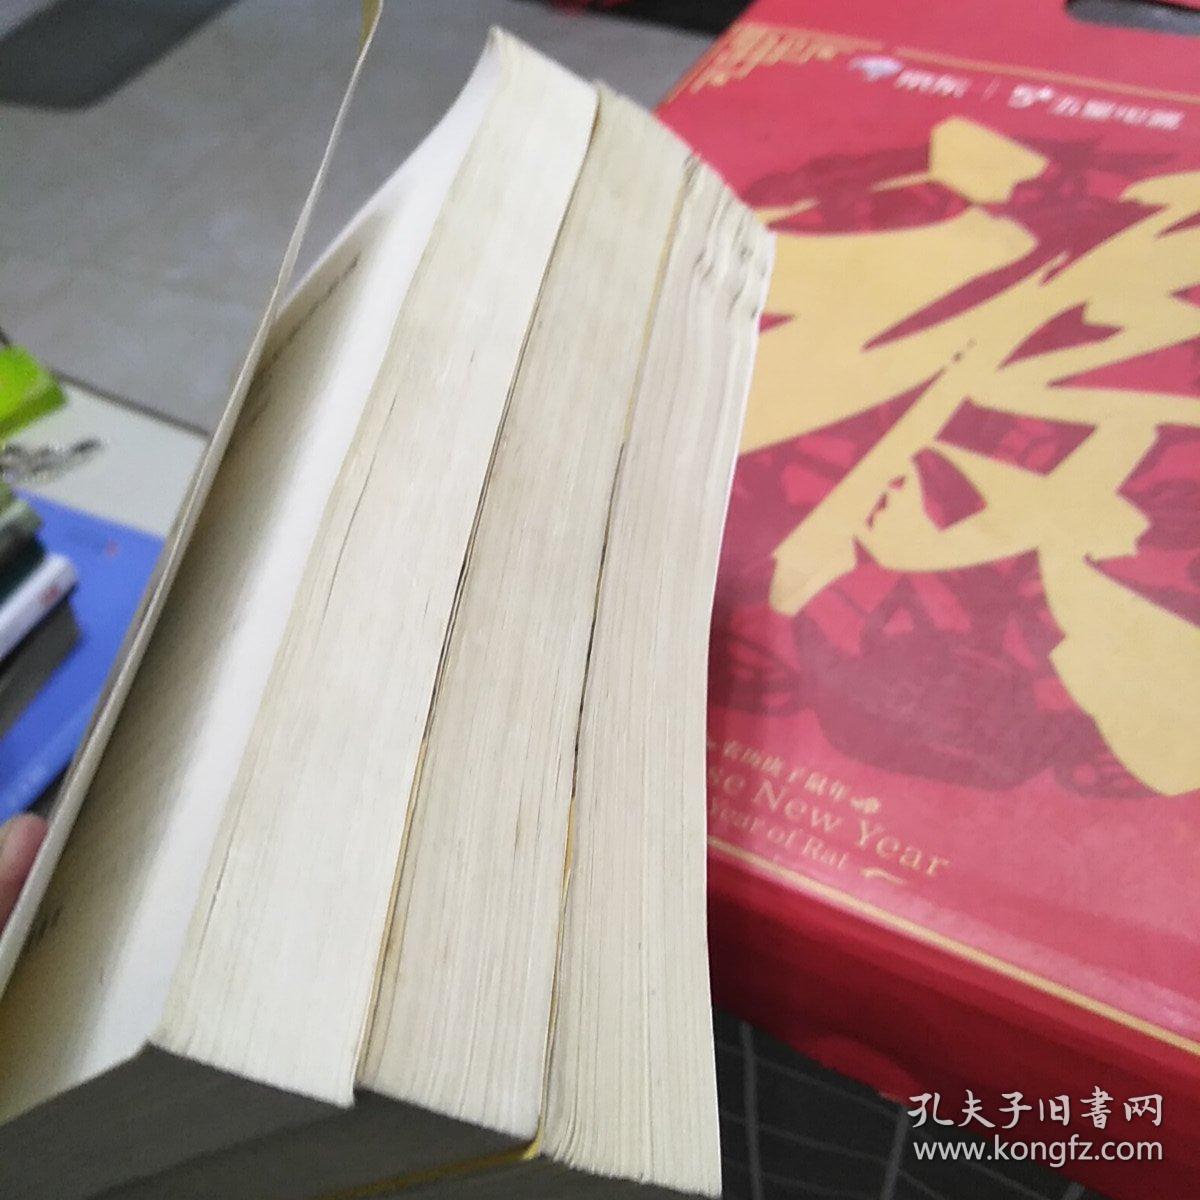 中国古代文学作品选上中下合售，32开，一版二印，书内有笔记划线不影响阅读如图所示